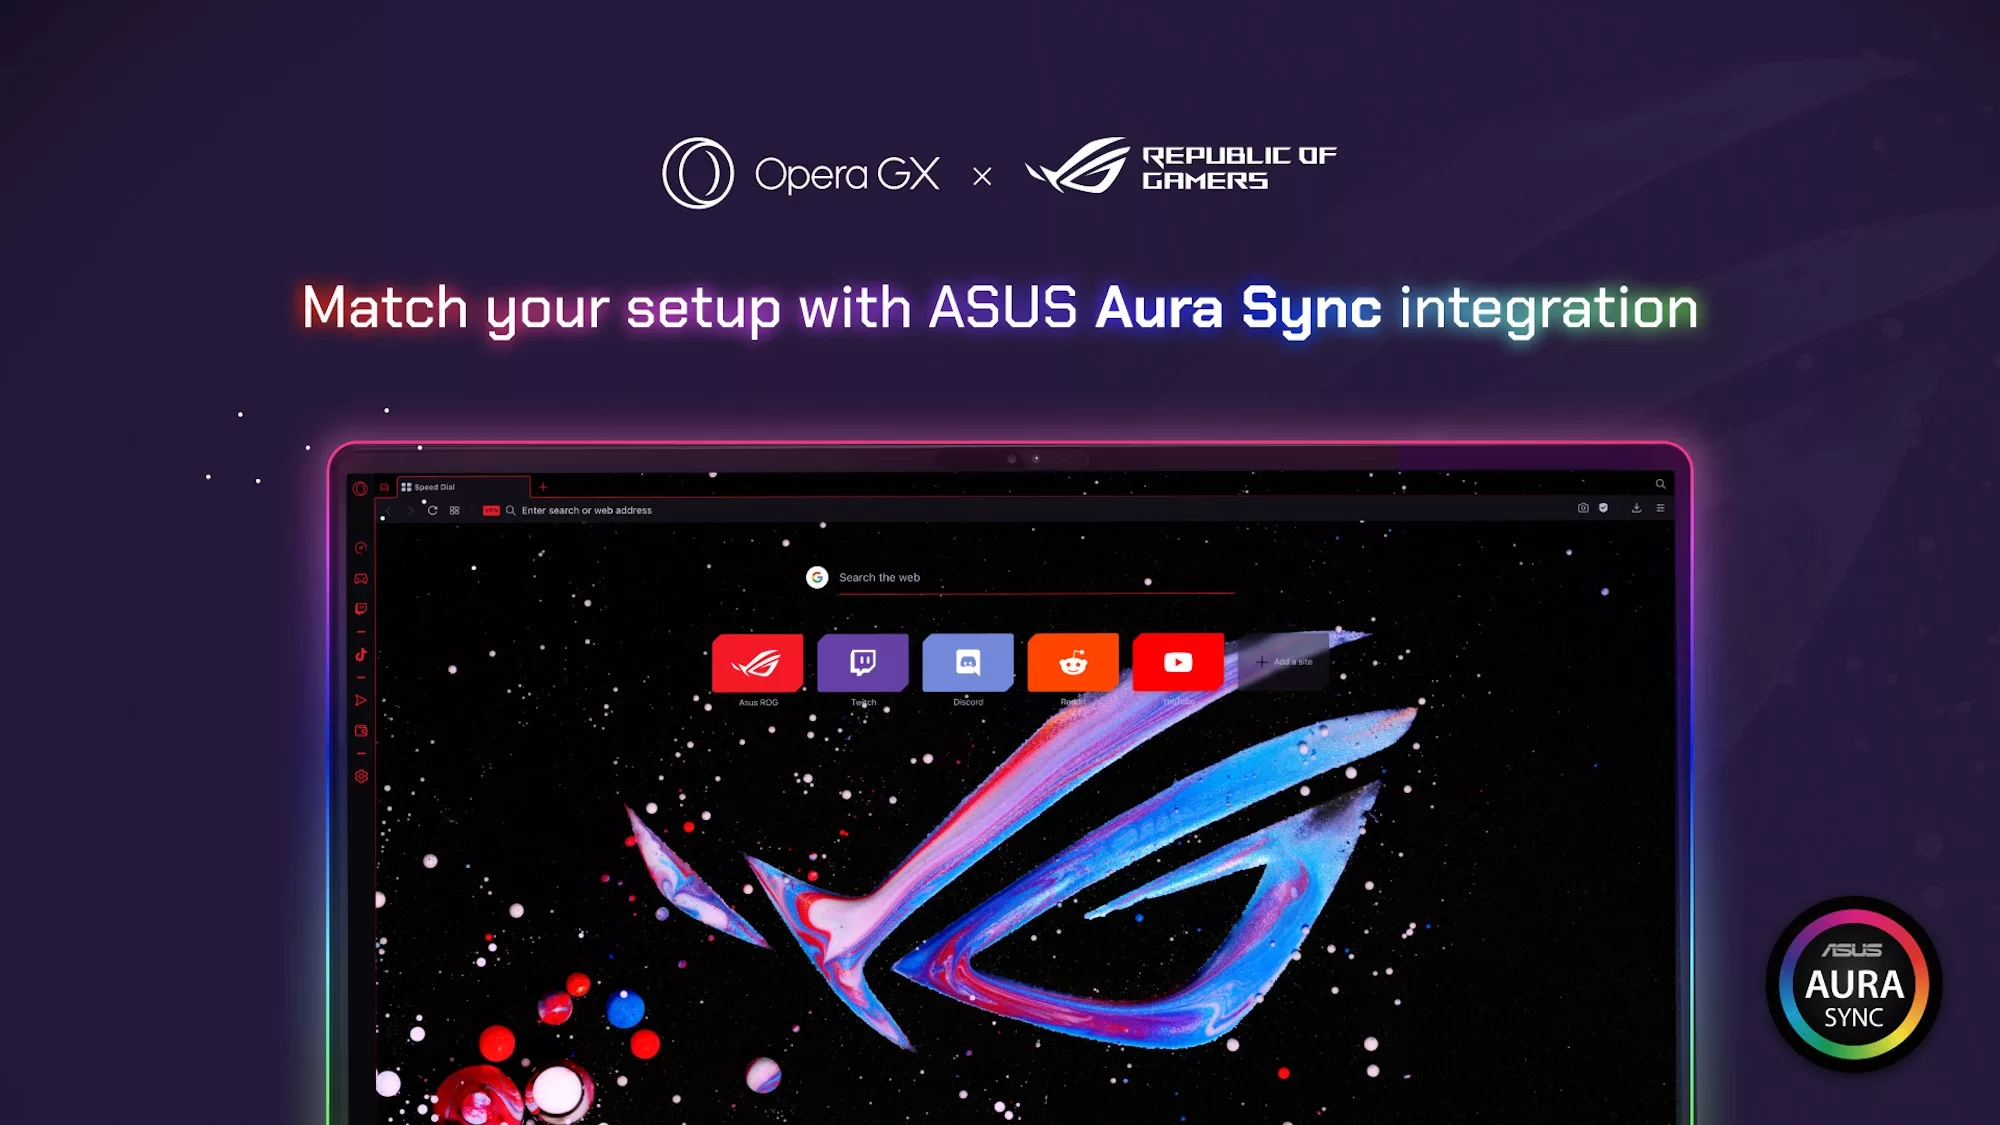 Инфографика, демонстрирующая интеграцию браузера с технологией подсветки ASUS Aura Sync